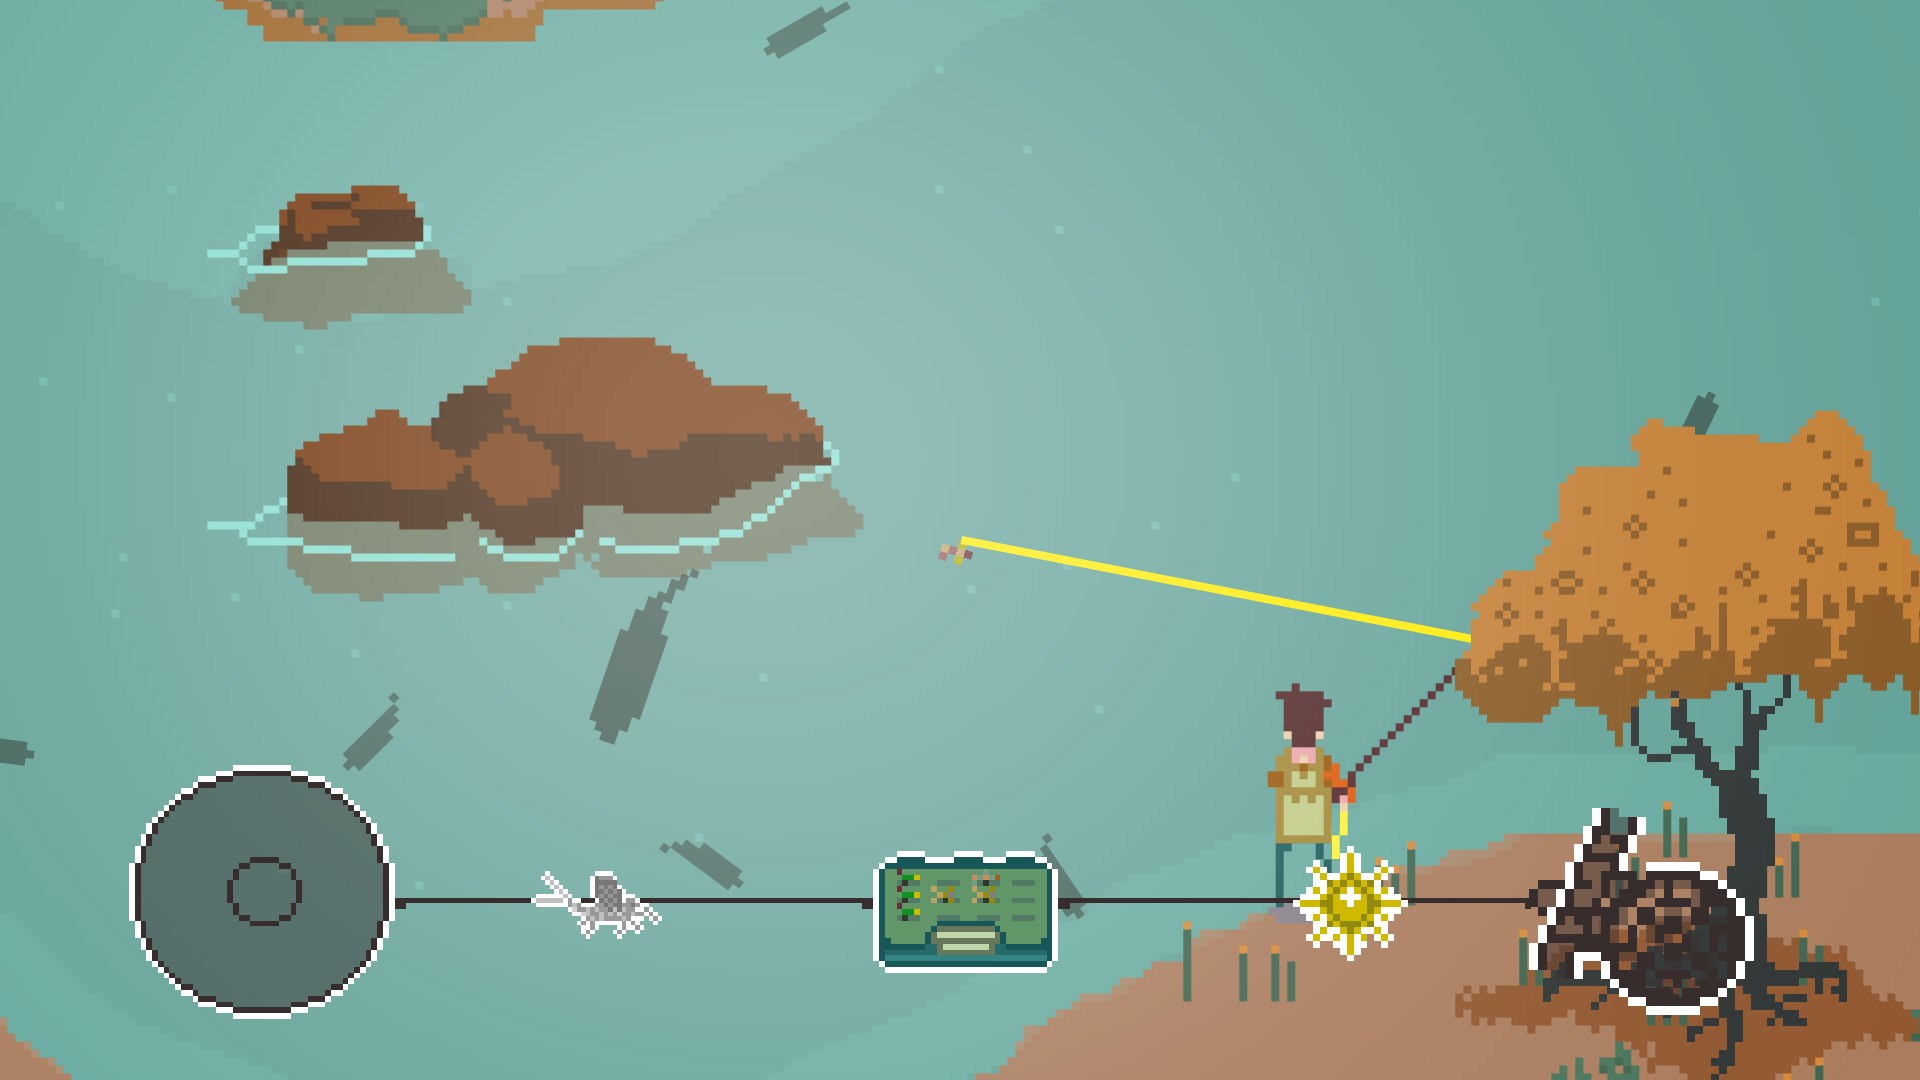 Rol yapma oyunu River Legends: A Fly Fishing Adventure, mobil cihazlar için çıktı